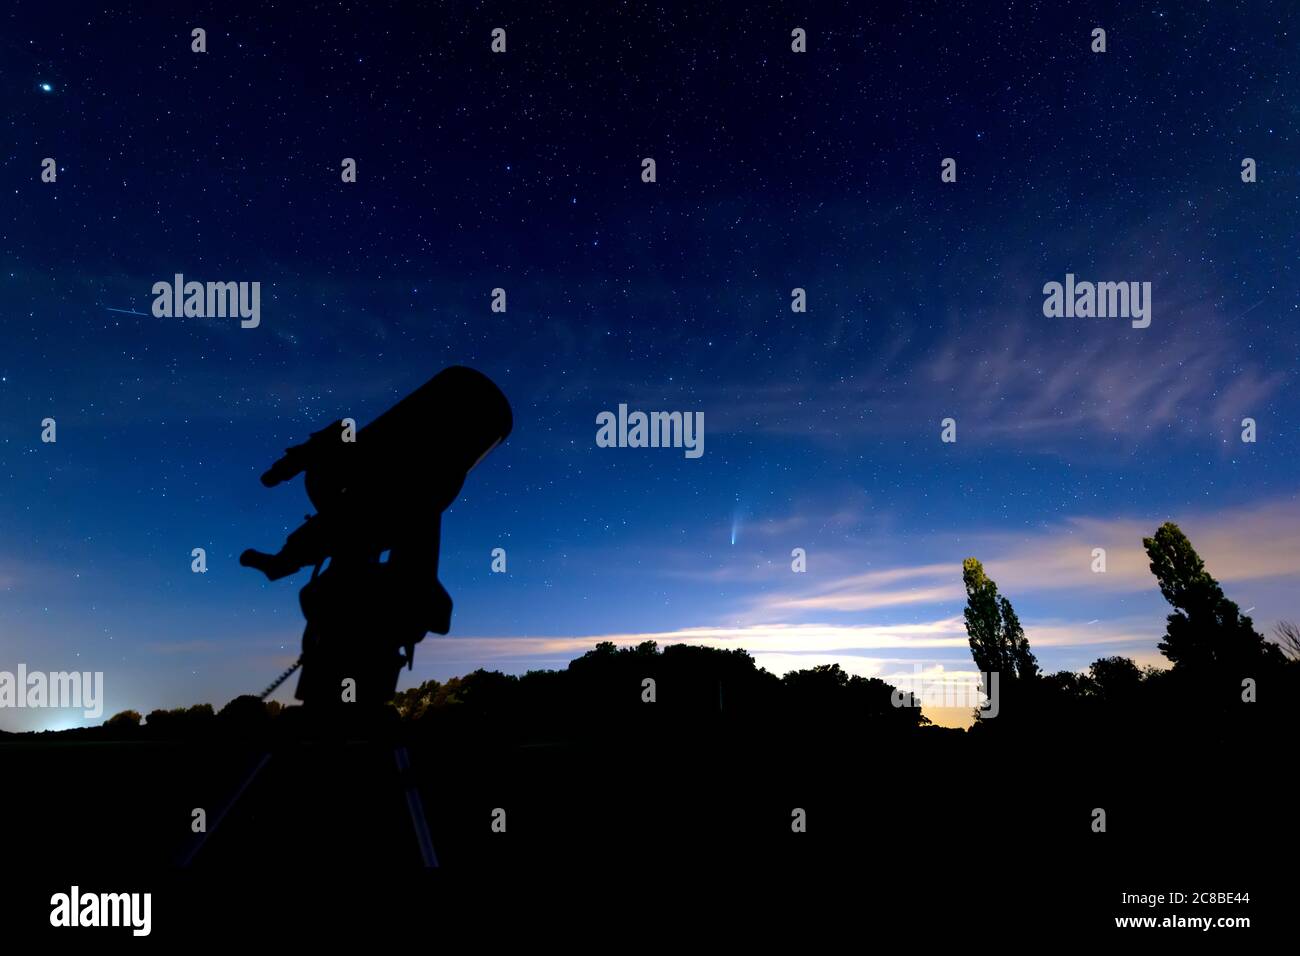 Silhouette de télescope sous un ciel étoilé bleu foncé au crépuscule, comète neowise visible sous la constellation du Grand Ours (Ursa Major). Banque D'Images